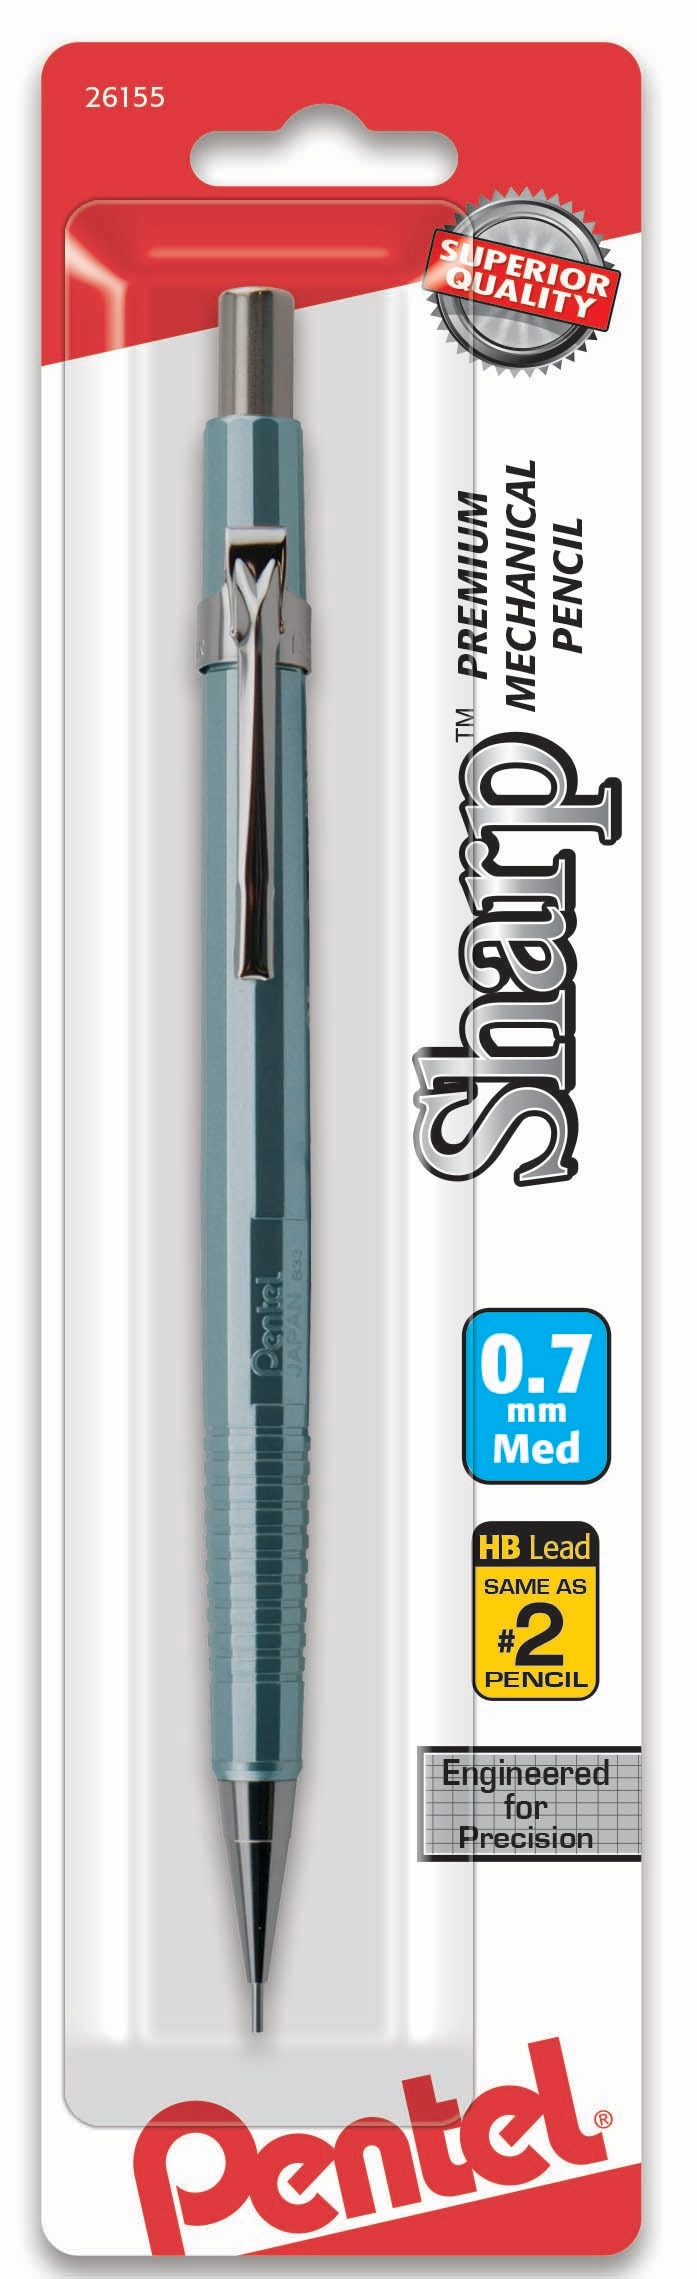 Pentel Sharp Mechanical Pencil 0.7mm Metallic Barrels Assorted Barrel Colors 1Pack